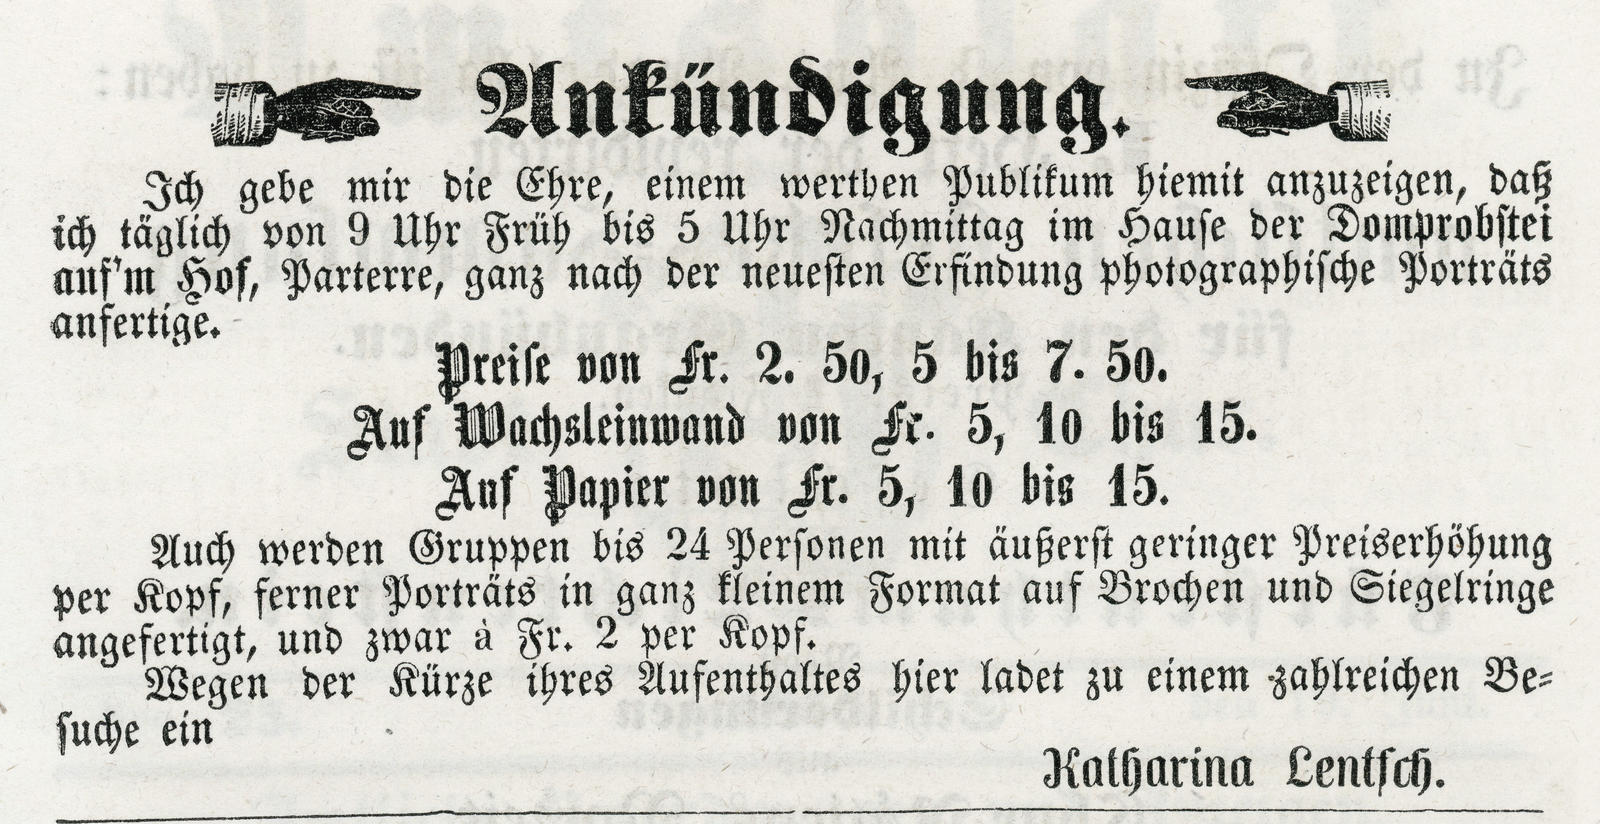 Auszug aus dem Amtsblatt der Stadt Chur 1858. Die Tiroler Schwestern Lentsch boten in Chur ihr Können an. 